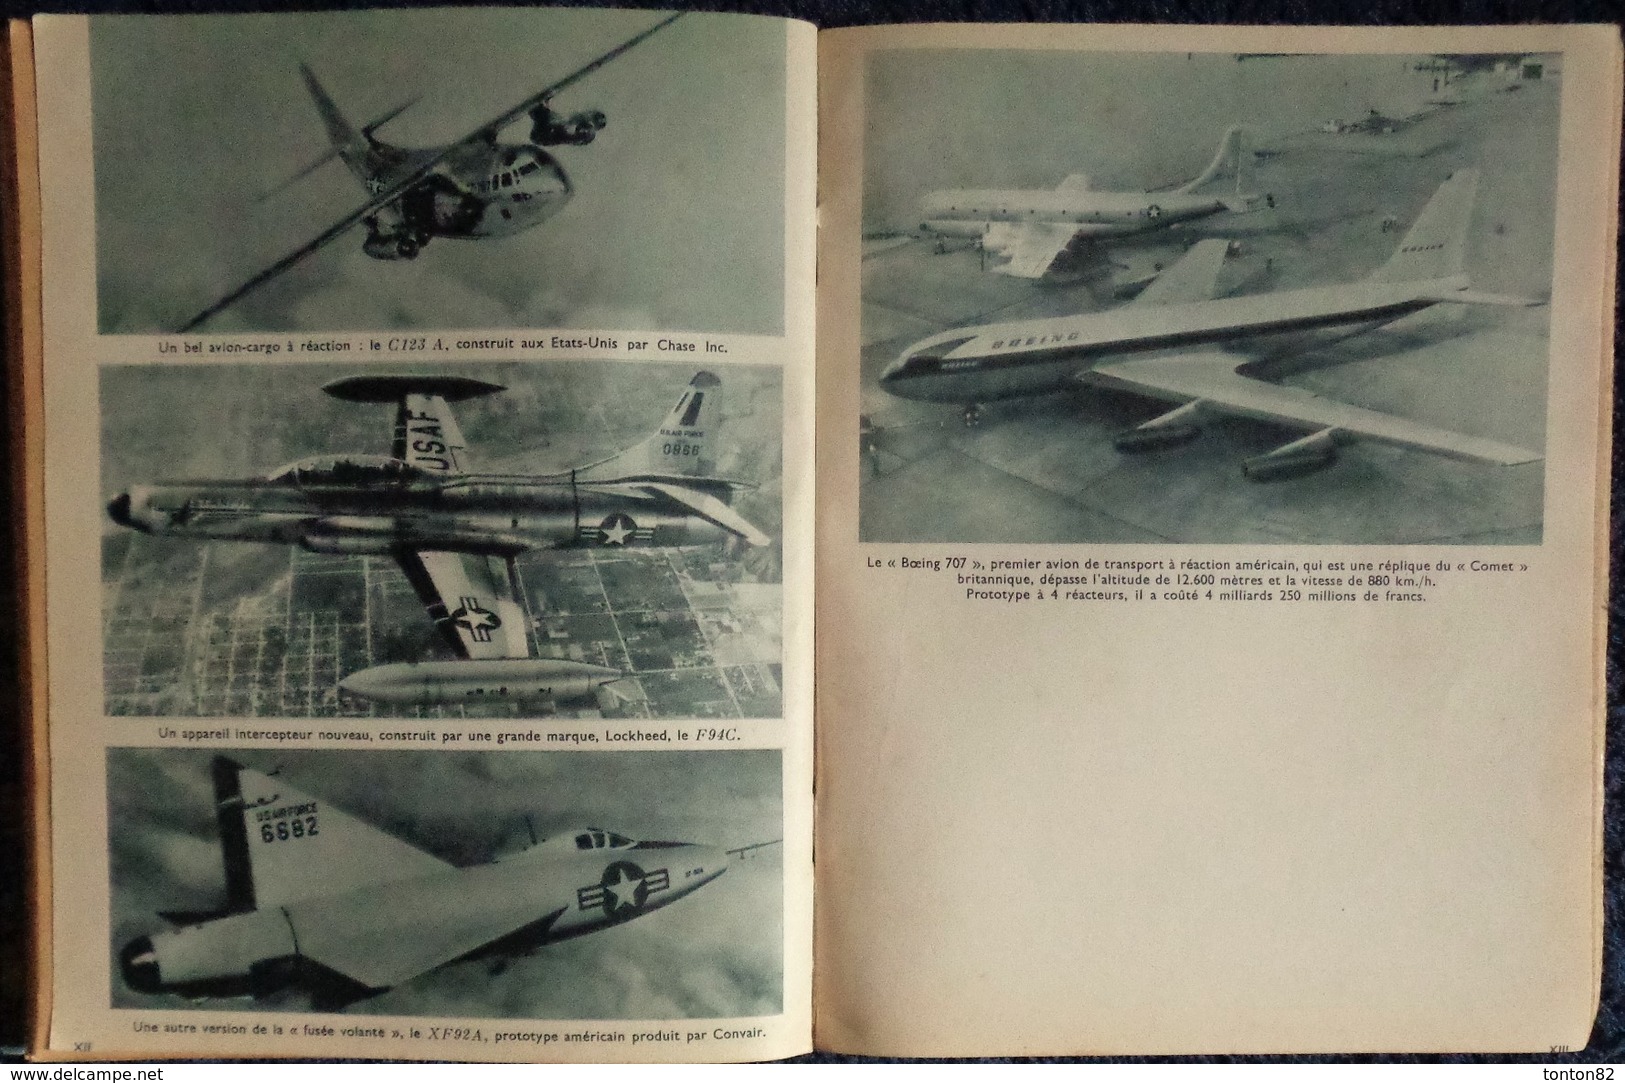 Claude-Henri Leconte - Les Cavaliers du ciel - La vie des pilotes d'essai d'avions à réaction - Pensée Moderne - (1954)